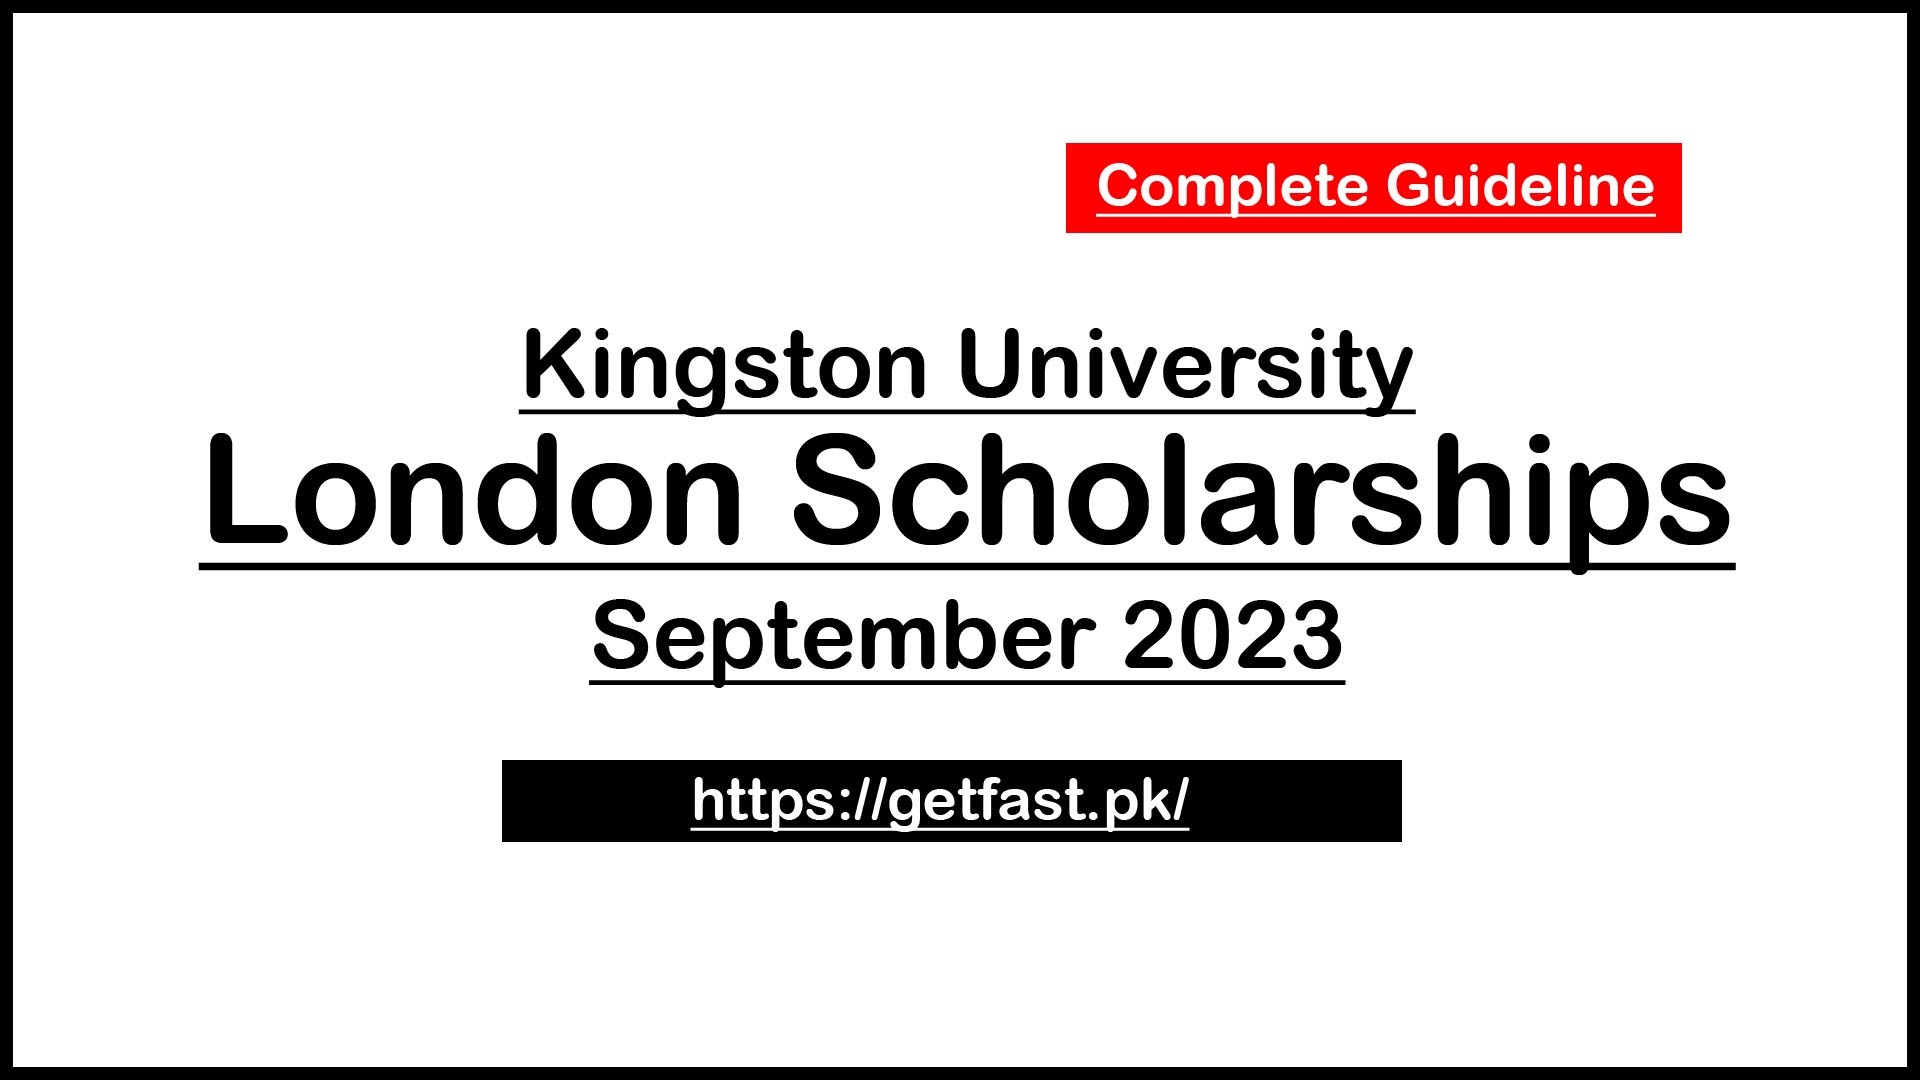 Kingston University London Scholarships September 2023 - Complete Guide